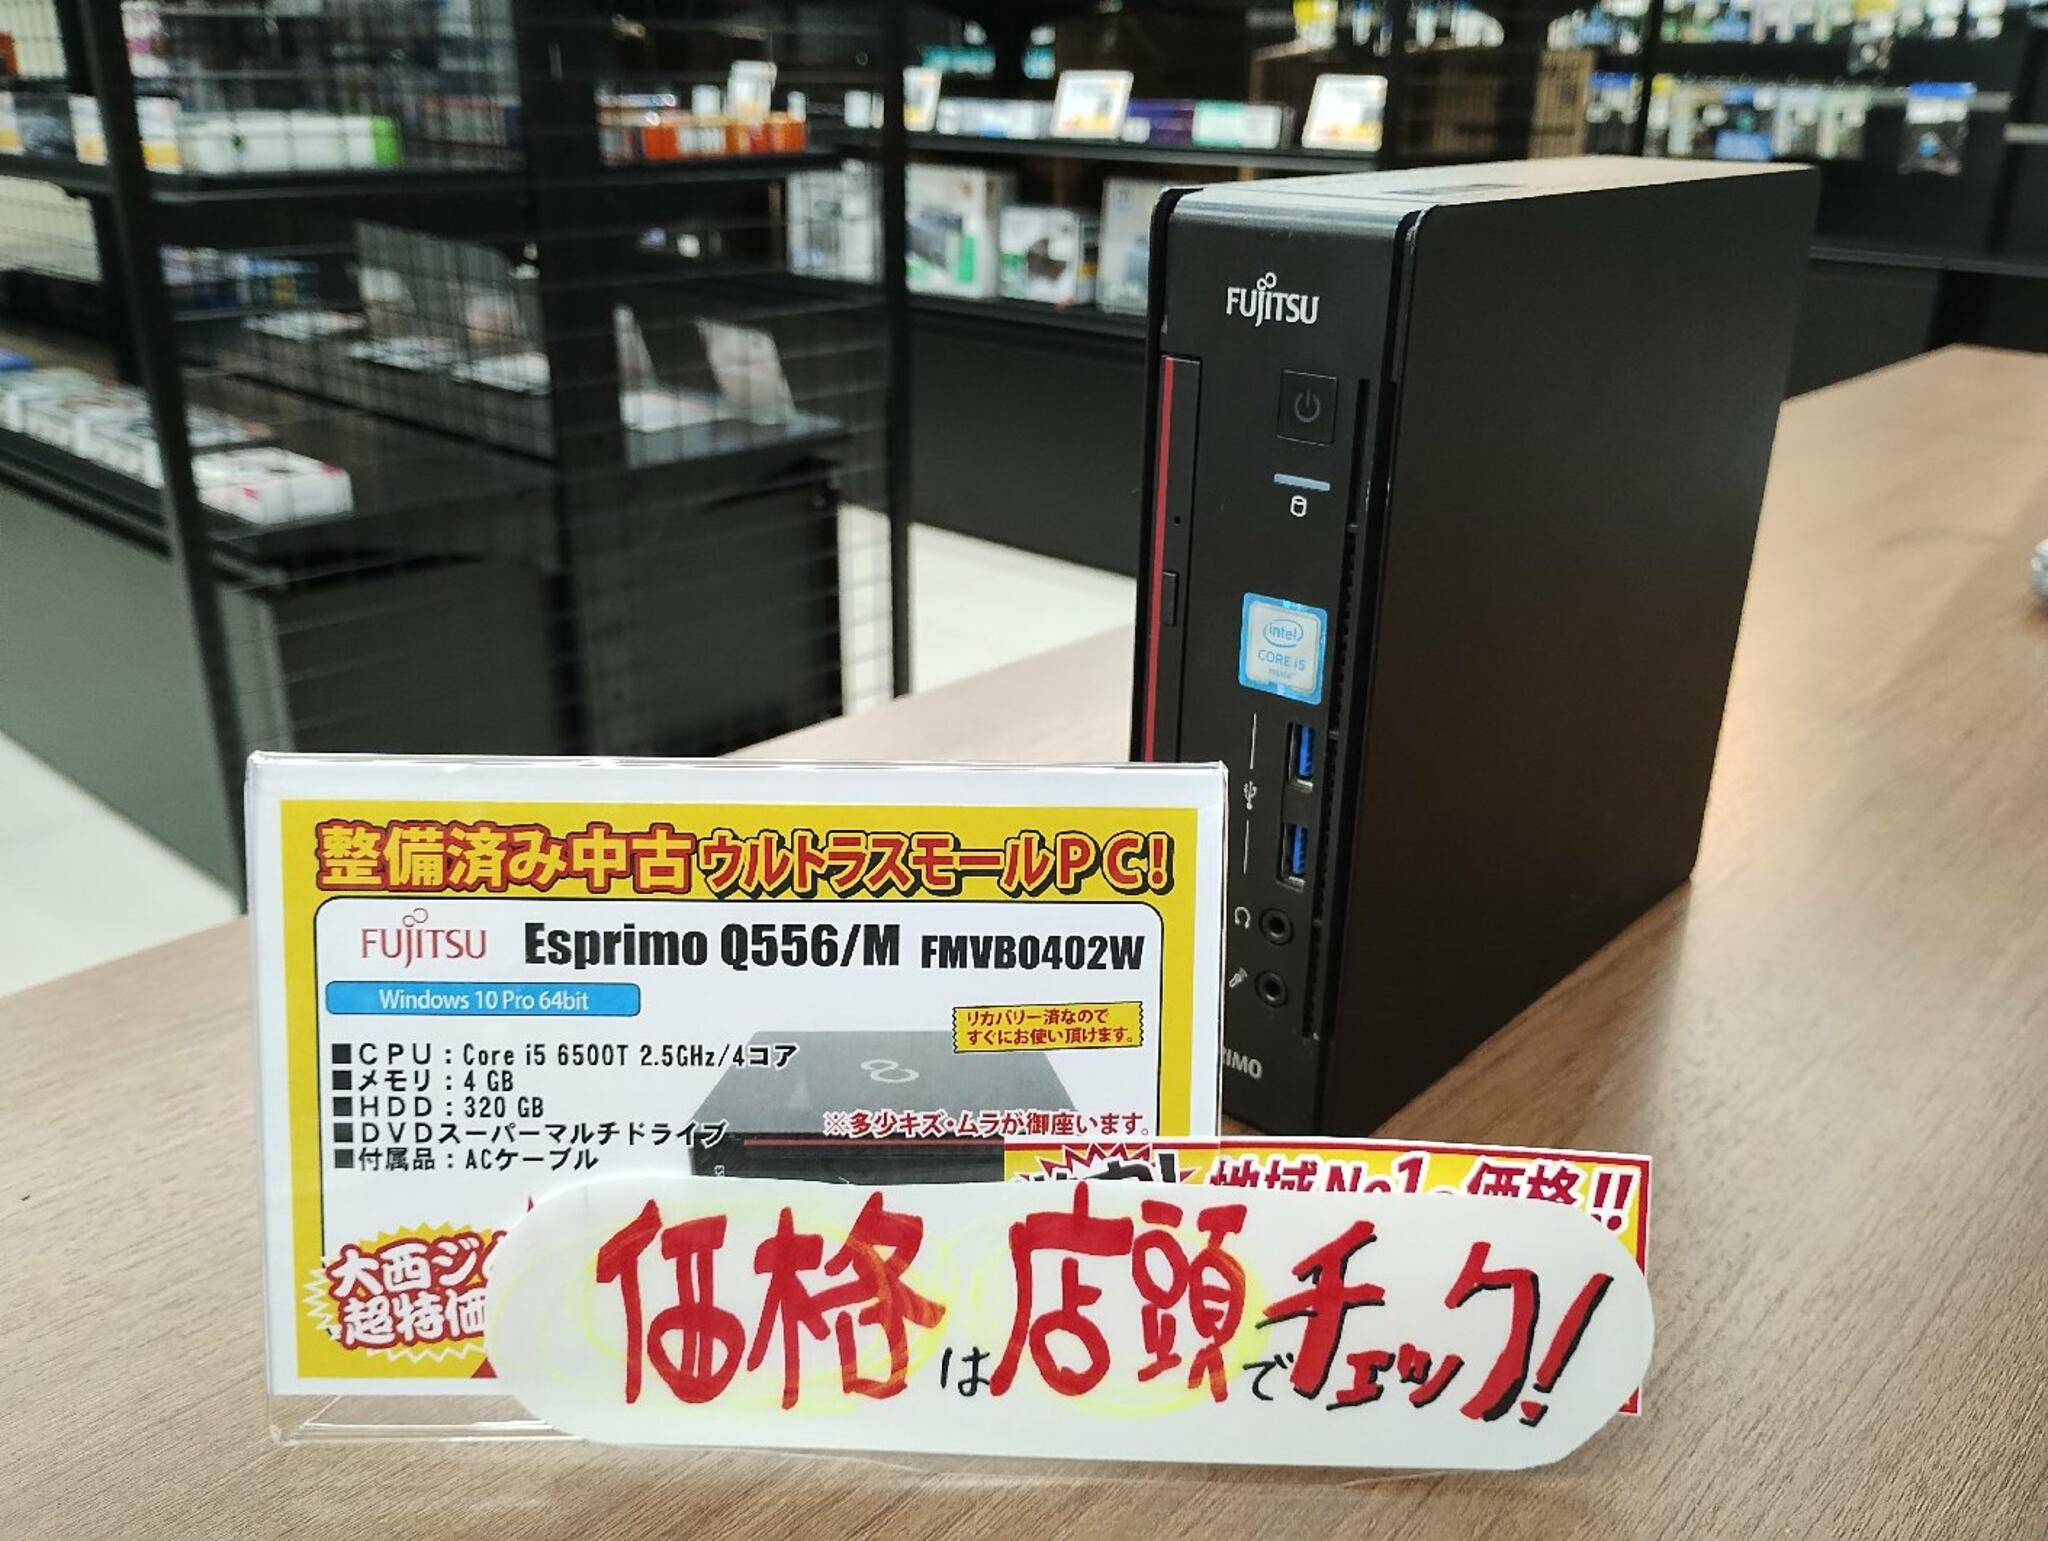 パソコン専門店 大西ジム 新長田店からのお知らせ(超美品中古スモールＰＣ「Fujitsu Esprimo Q556/M」入荷しました！)に関する写真